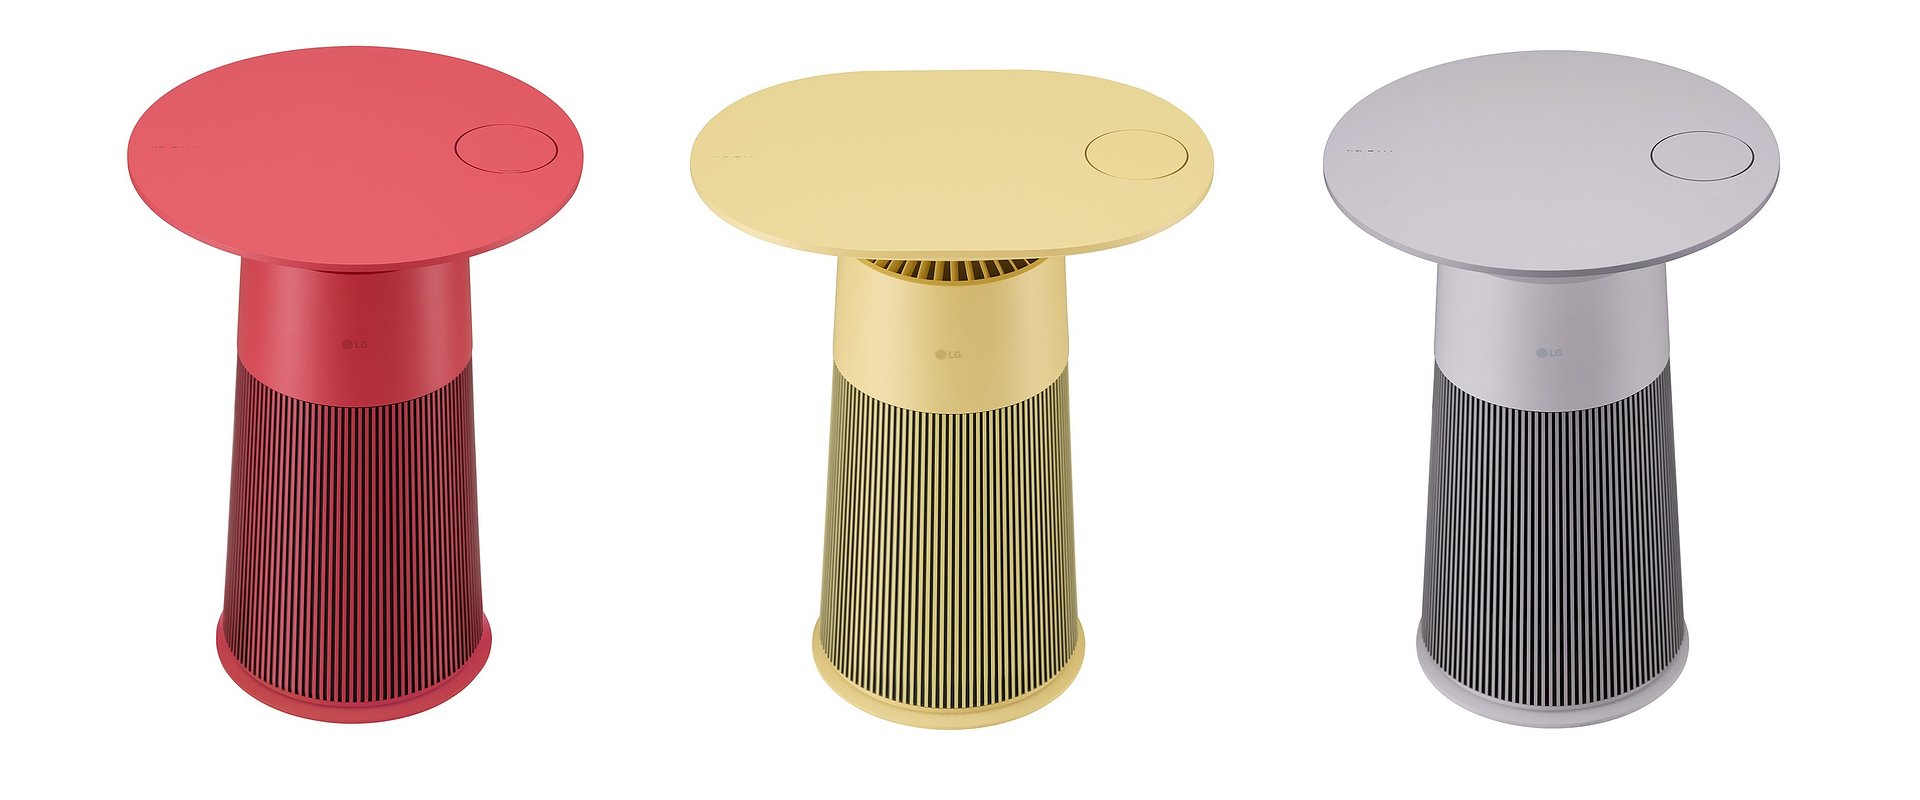 LG zaprezentuje na targach IFA 2022 oczyszczacz powietrza w kształcie stolika